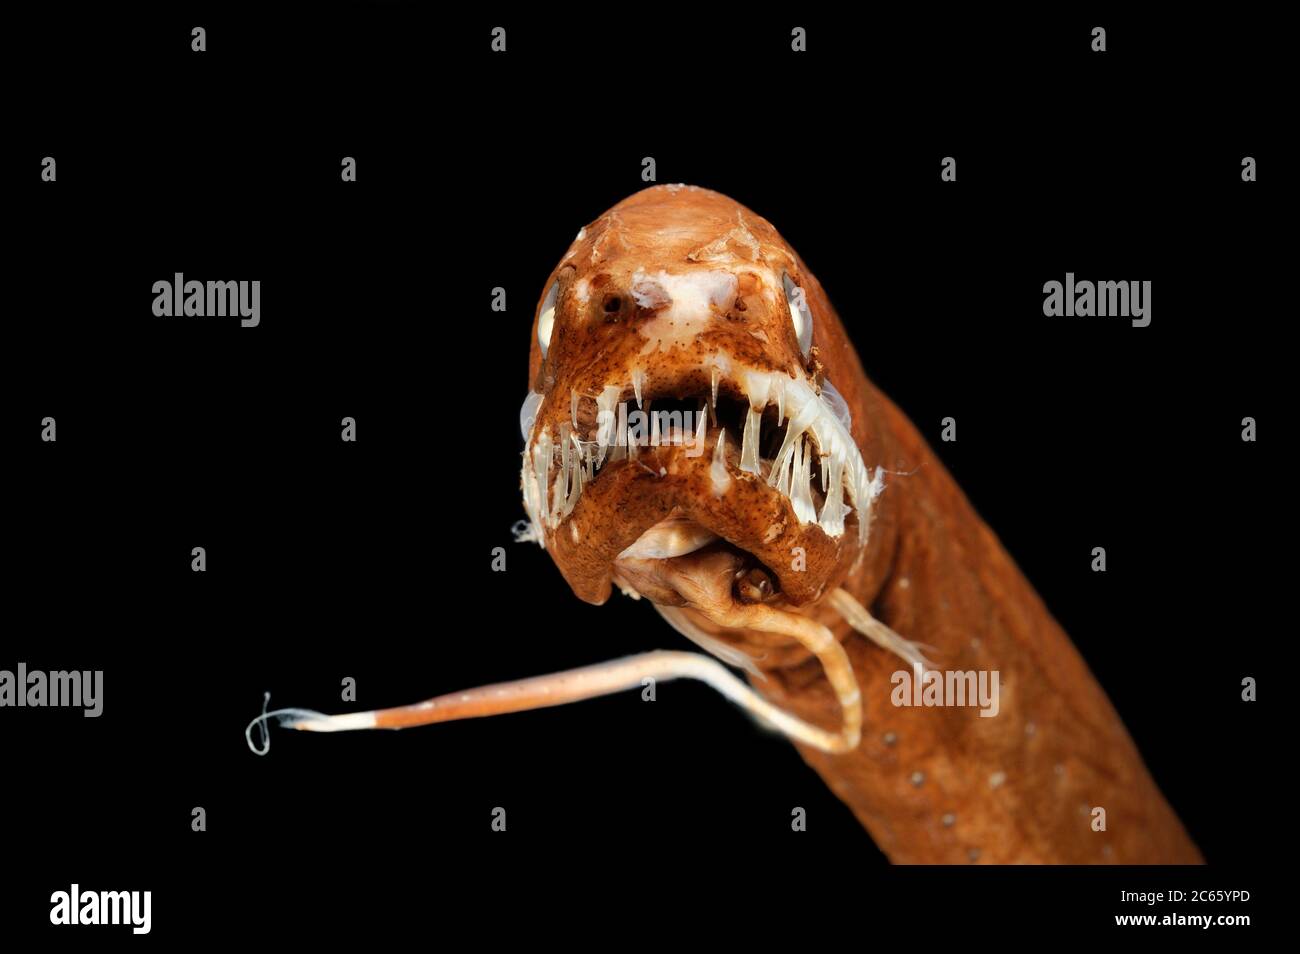 Le dragonfish noir sans écailles (Melanostomias melanops) est un poisson marin mince, jusqu'à 30 cm de long. Il présente un processus charnel de bioluminescence à son menton, utilisé pour attirer les proies à portée de la bouche fortement dentée. Les organes émettant de la lumière sont disposés le long de la partie inférieure de son corps et sous l'œil. On le trouve dans l'Atlantique et l'Indo-Pacifique. Spécimen conservé. La photo a été prise en coopération avec l'Université du Musée zoologique de Hambourg. Banque D'Images